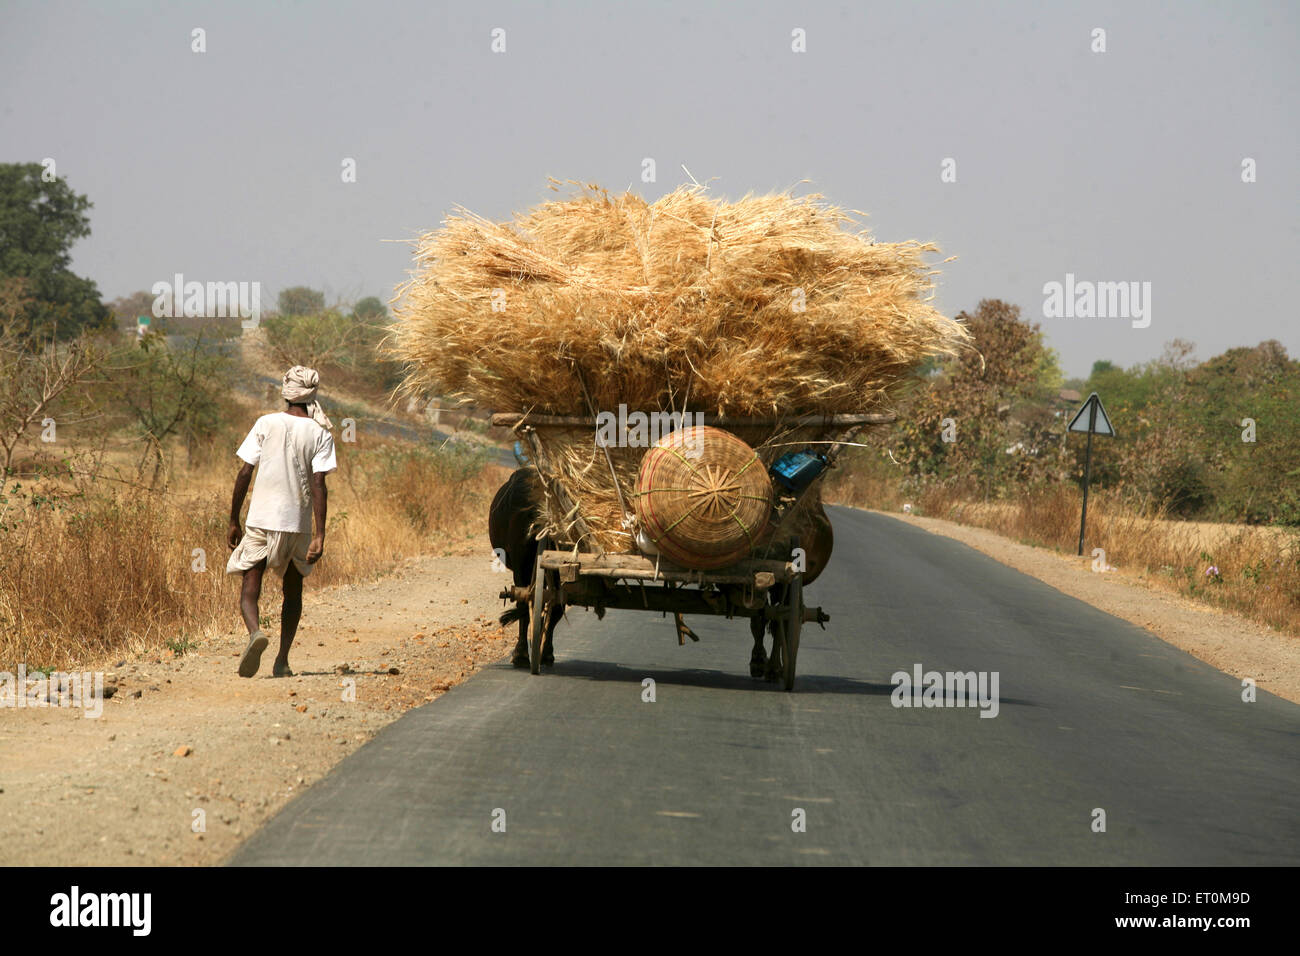 Homme marchant avec taureaux panier transportant récolte du blé d'or passant sur la route de Bhopal dans le Madhya Pradesh ; Inde Banque D'Images